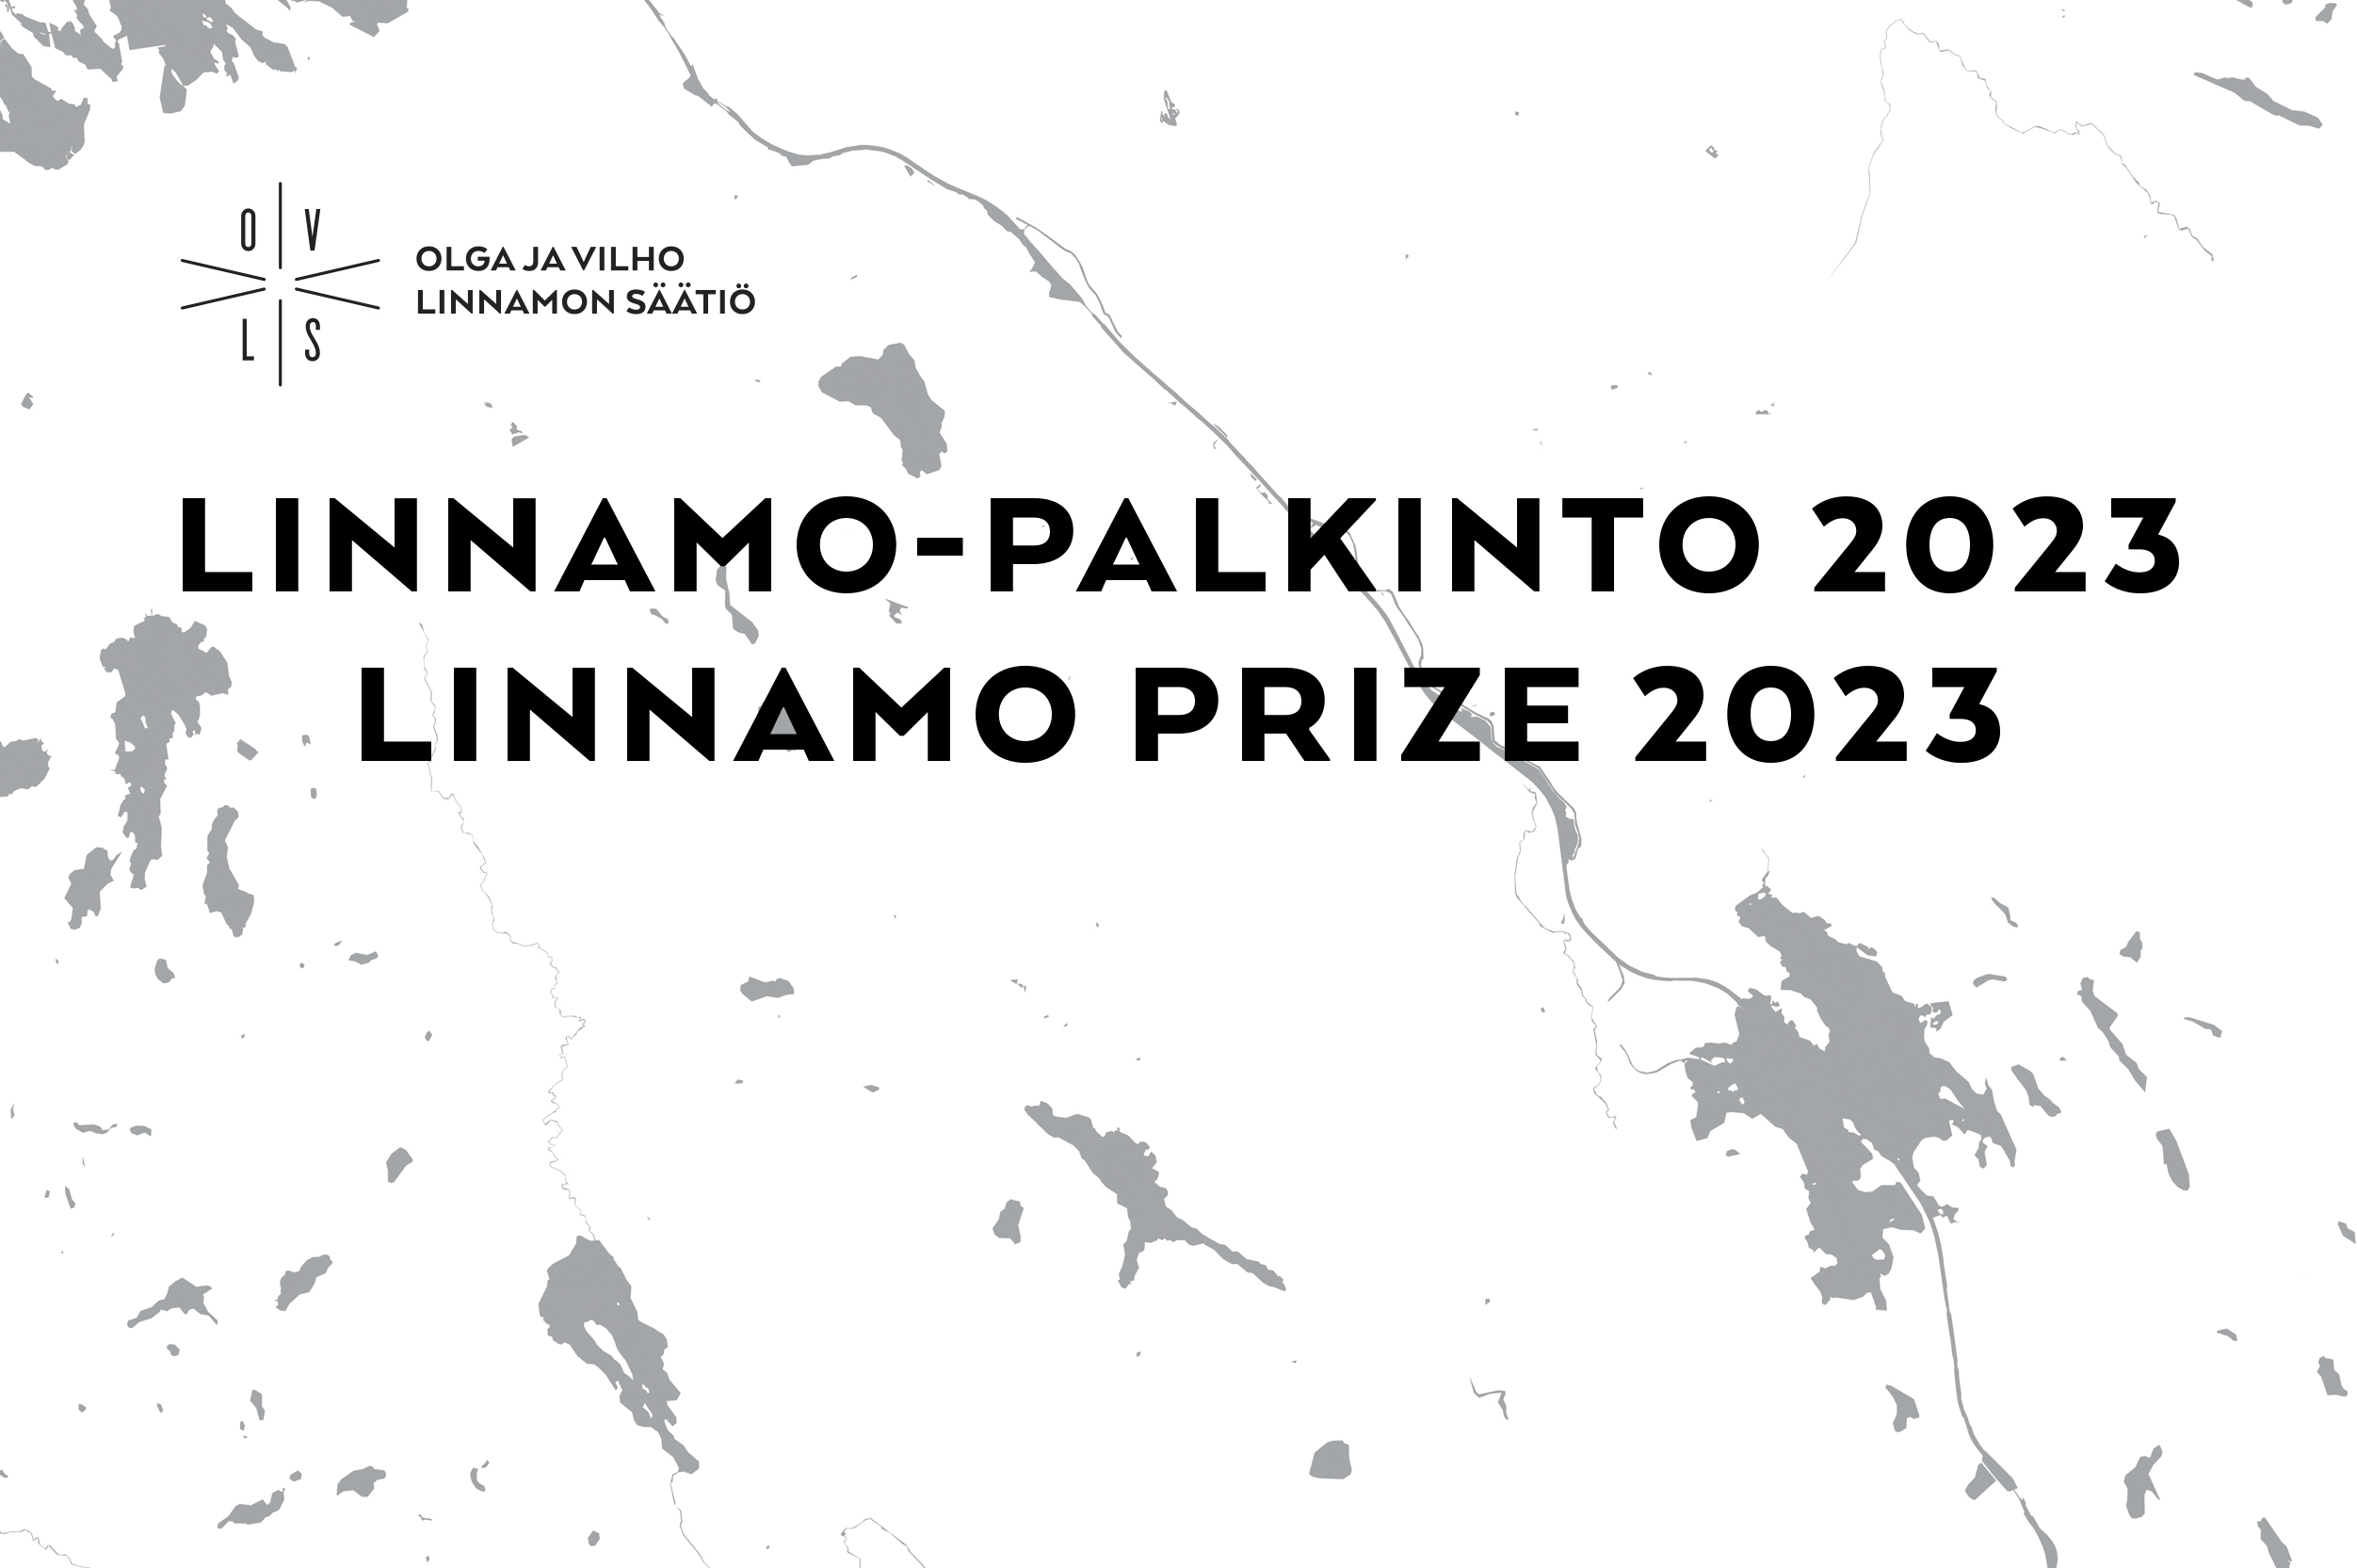 The 2023 Linnamo award ceremony